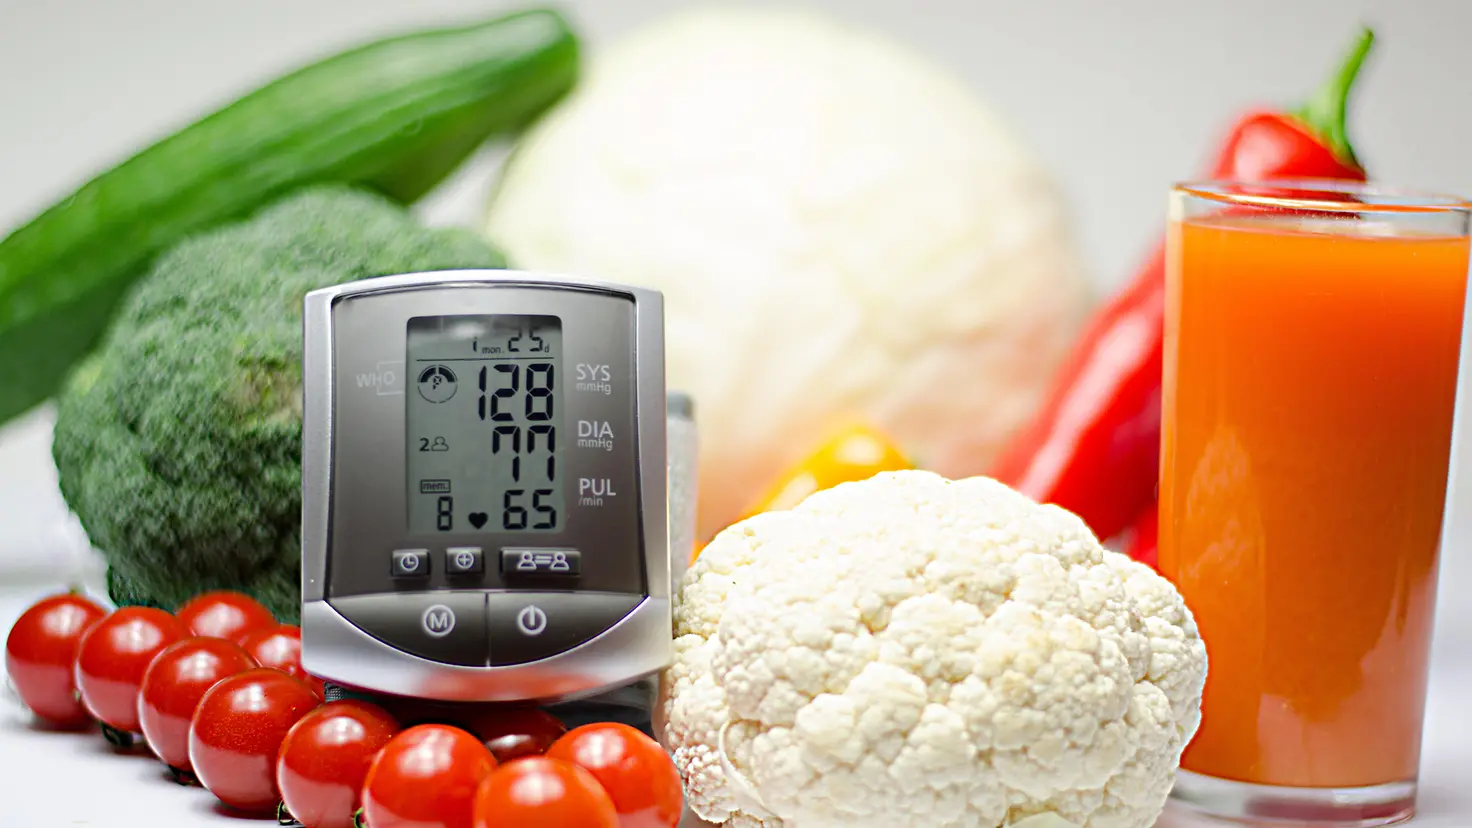 Zu sehen ist ein Blutdruckmessgerät und Gemüse